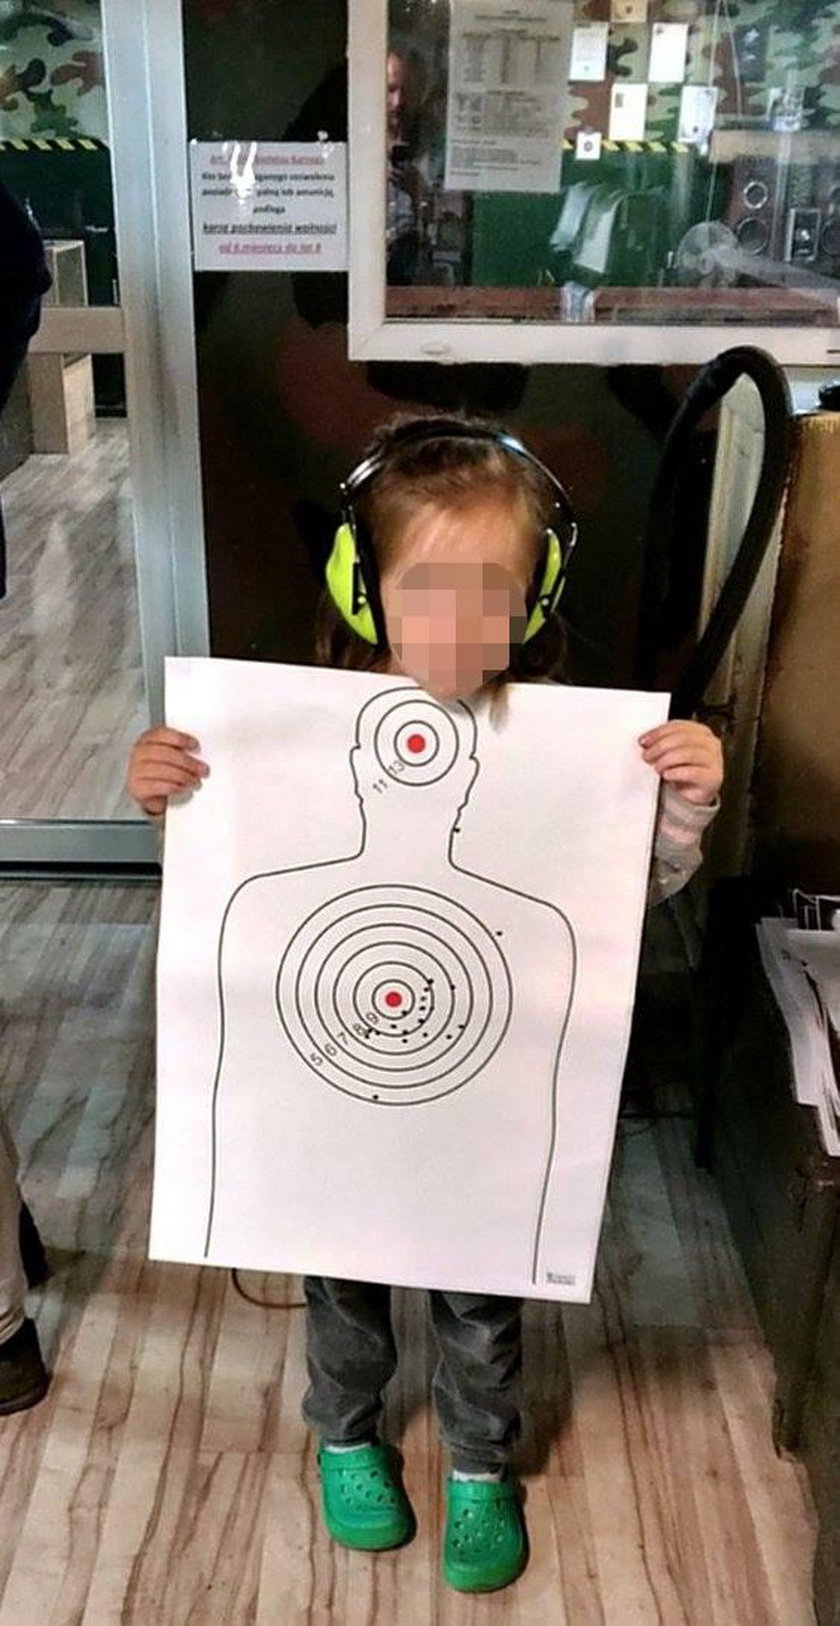 Tarnowskie Góry. 4-latka strzela na strzelnicy